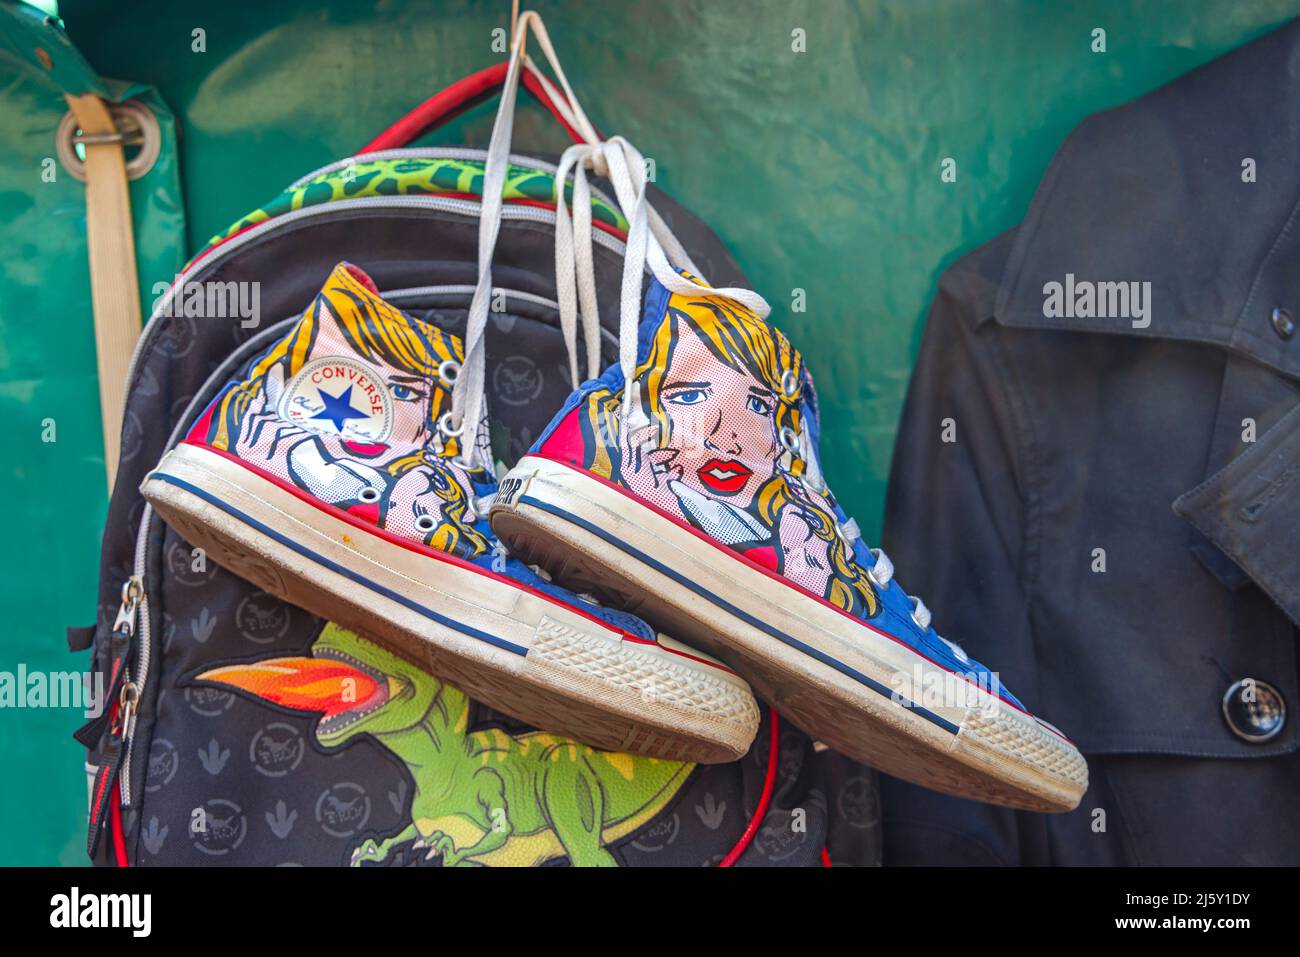 Belgrado, Serbia - 23 de abril de 2022: Edición Limitada Converse All Star  Sneakers con estampado de dibujos animados en el mercado de pulgas  Fotografía de stock - Alamy